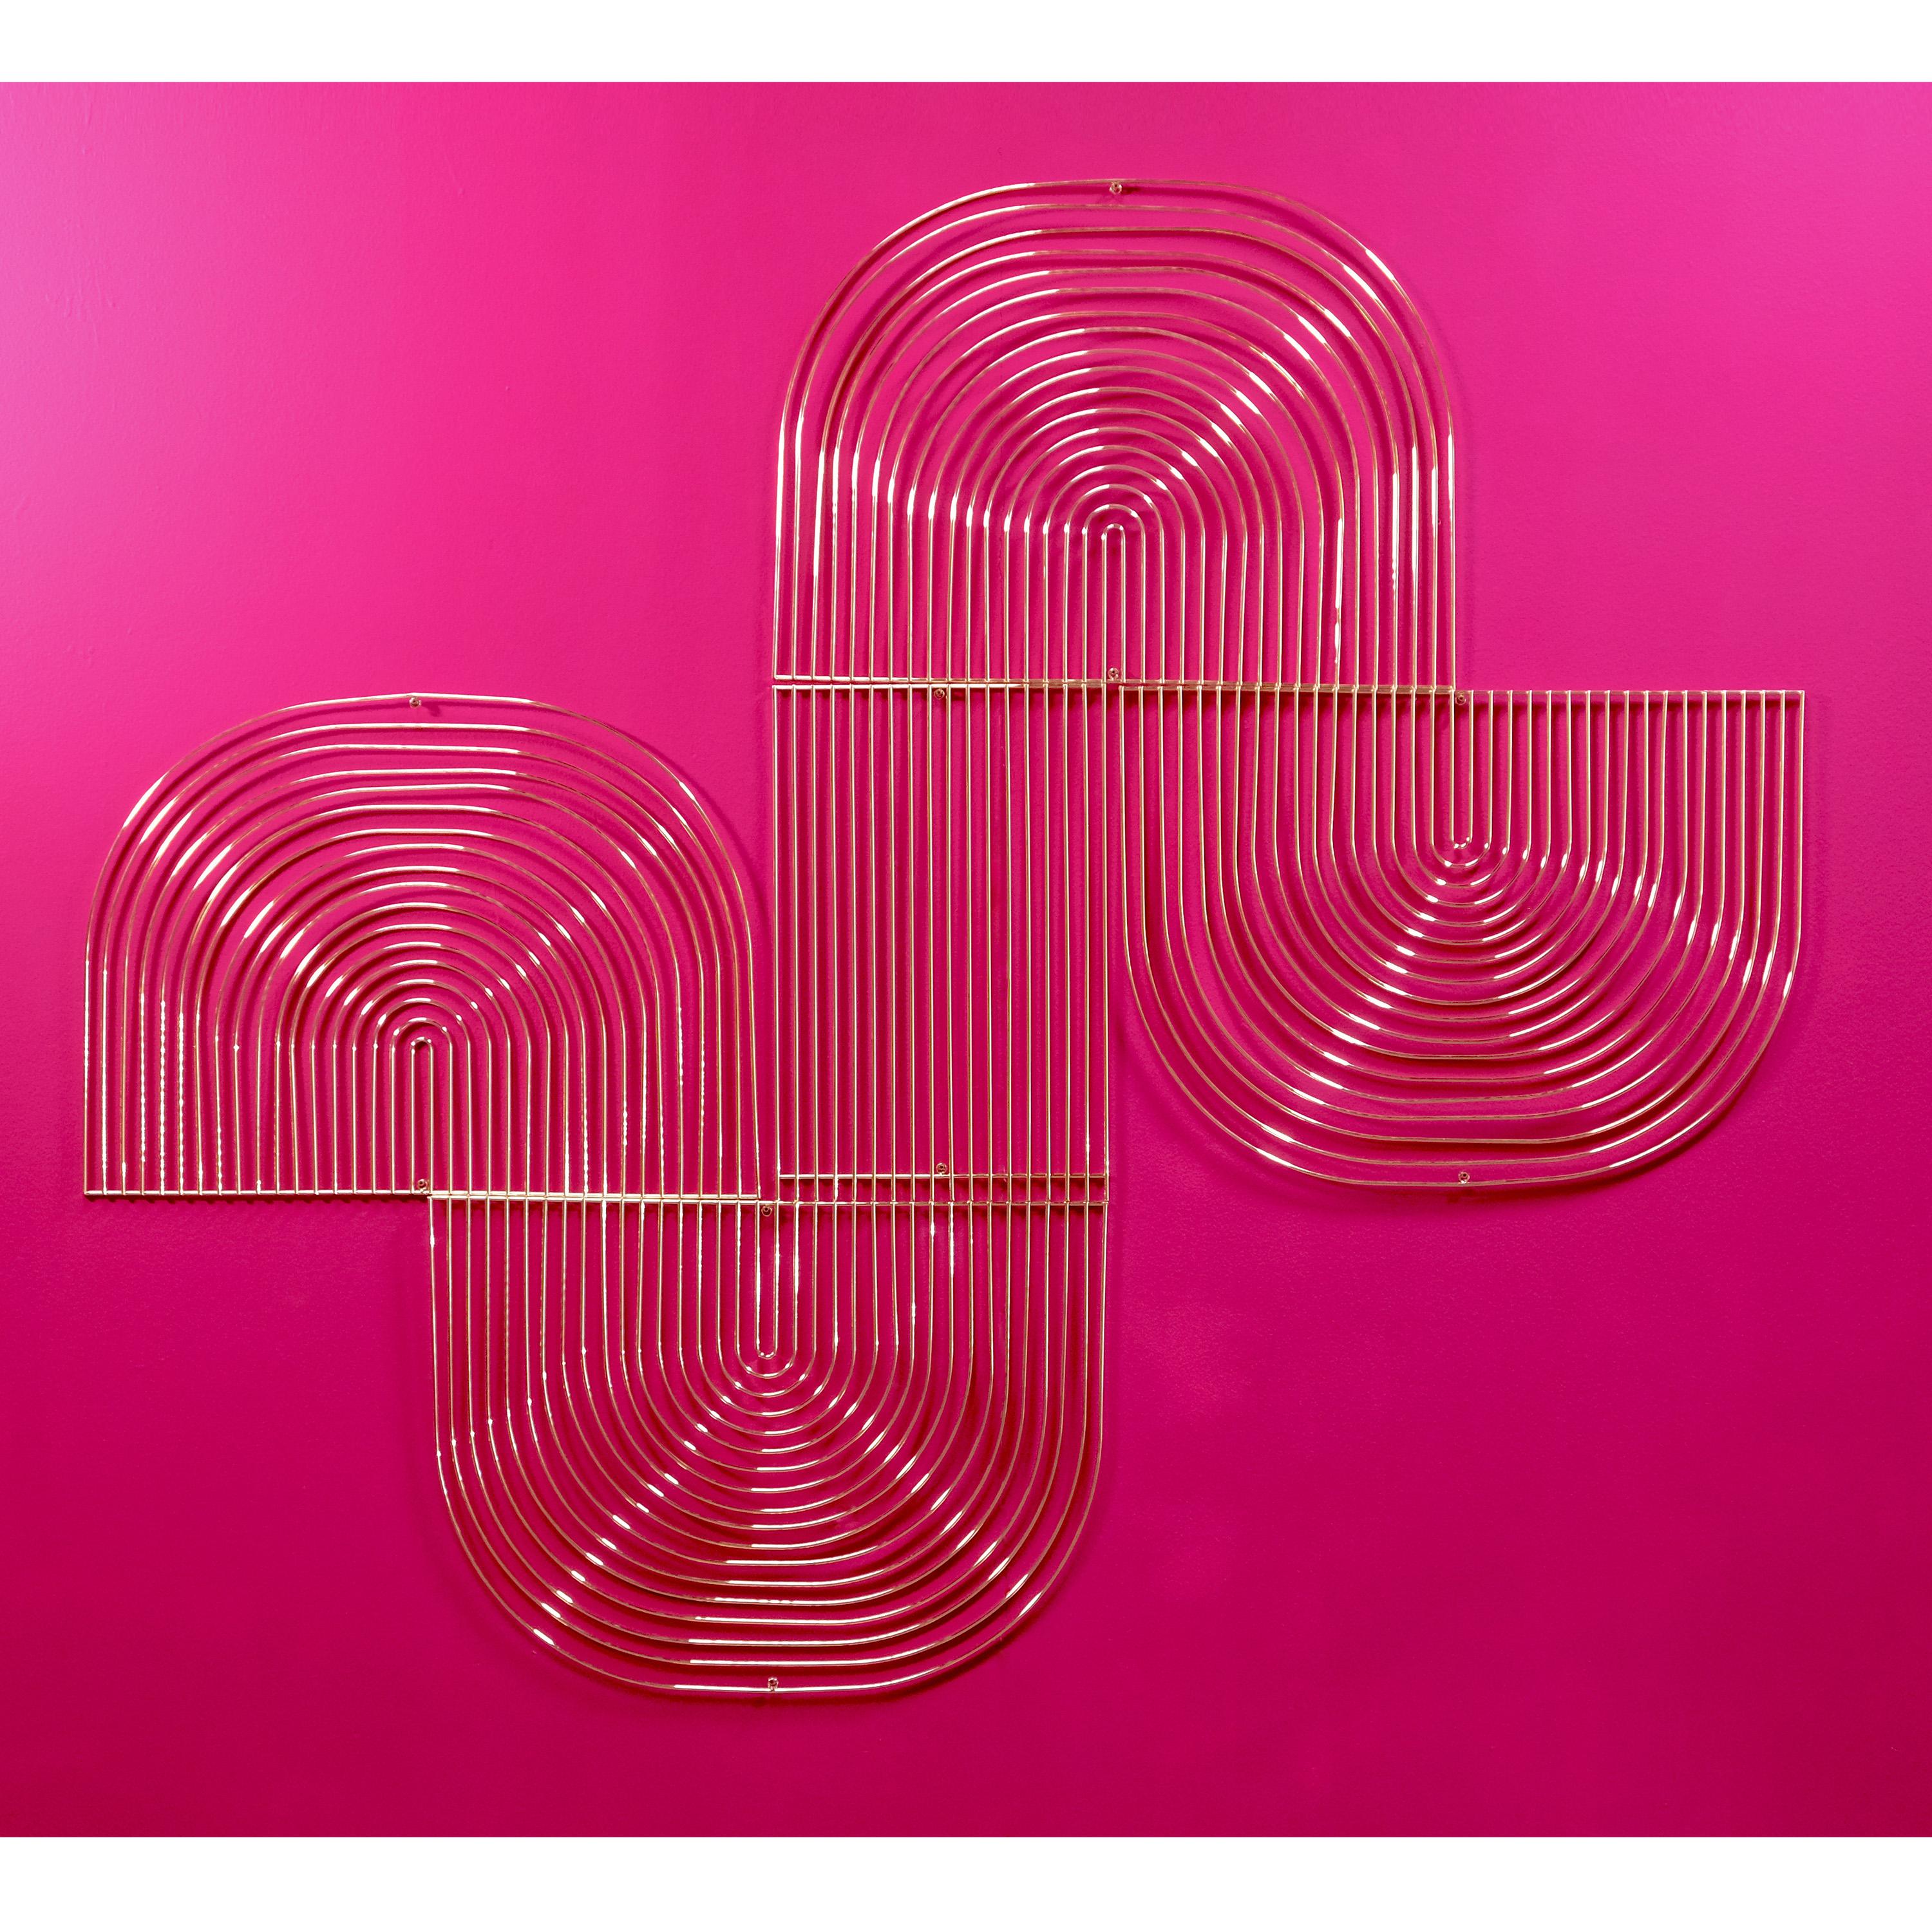 Contemporary Modern Wall Art, Modular Art Piece by Bend Goods 'Round', Peachy Pink